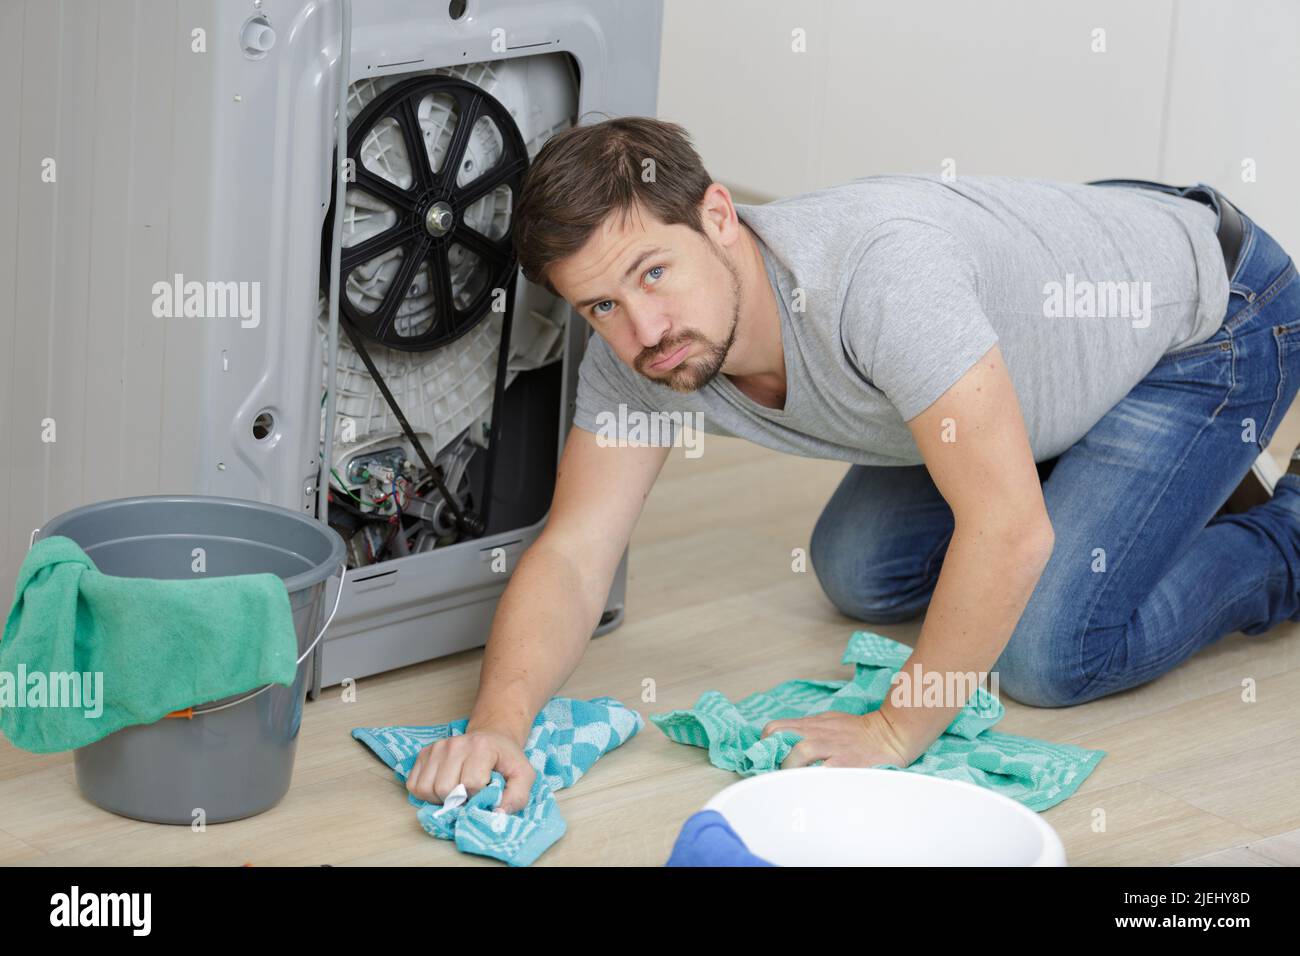 un plombier nettoie une fuite Banque D'Images